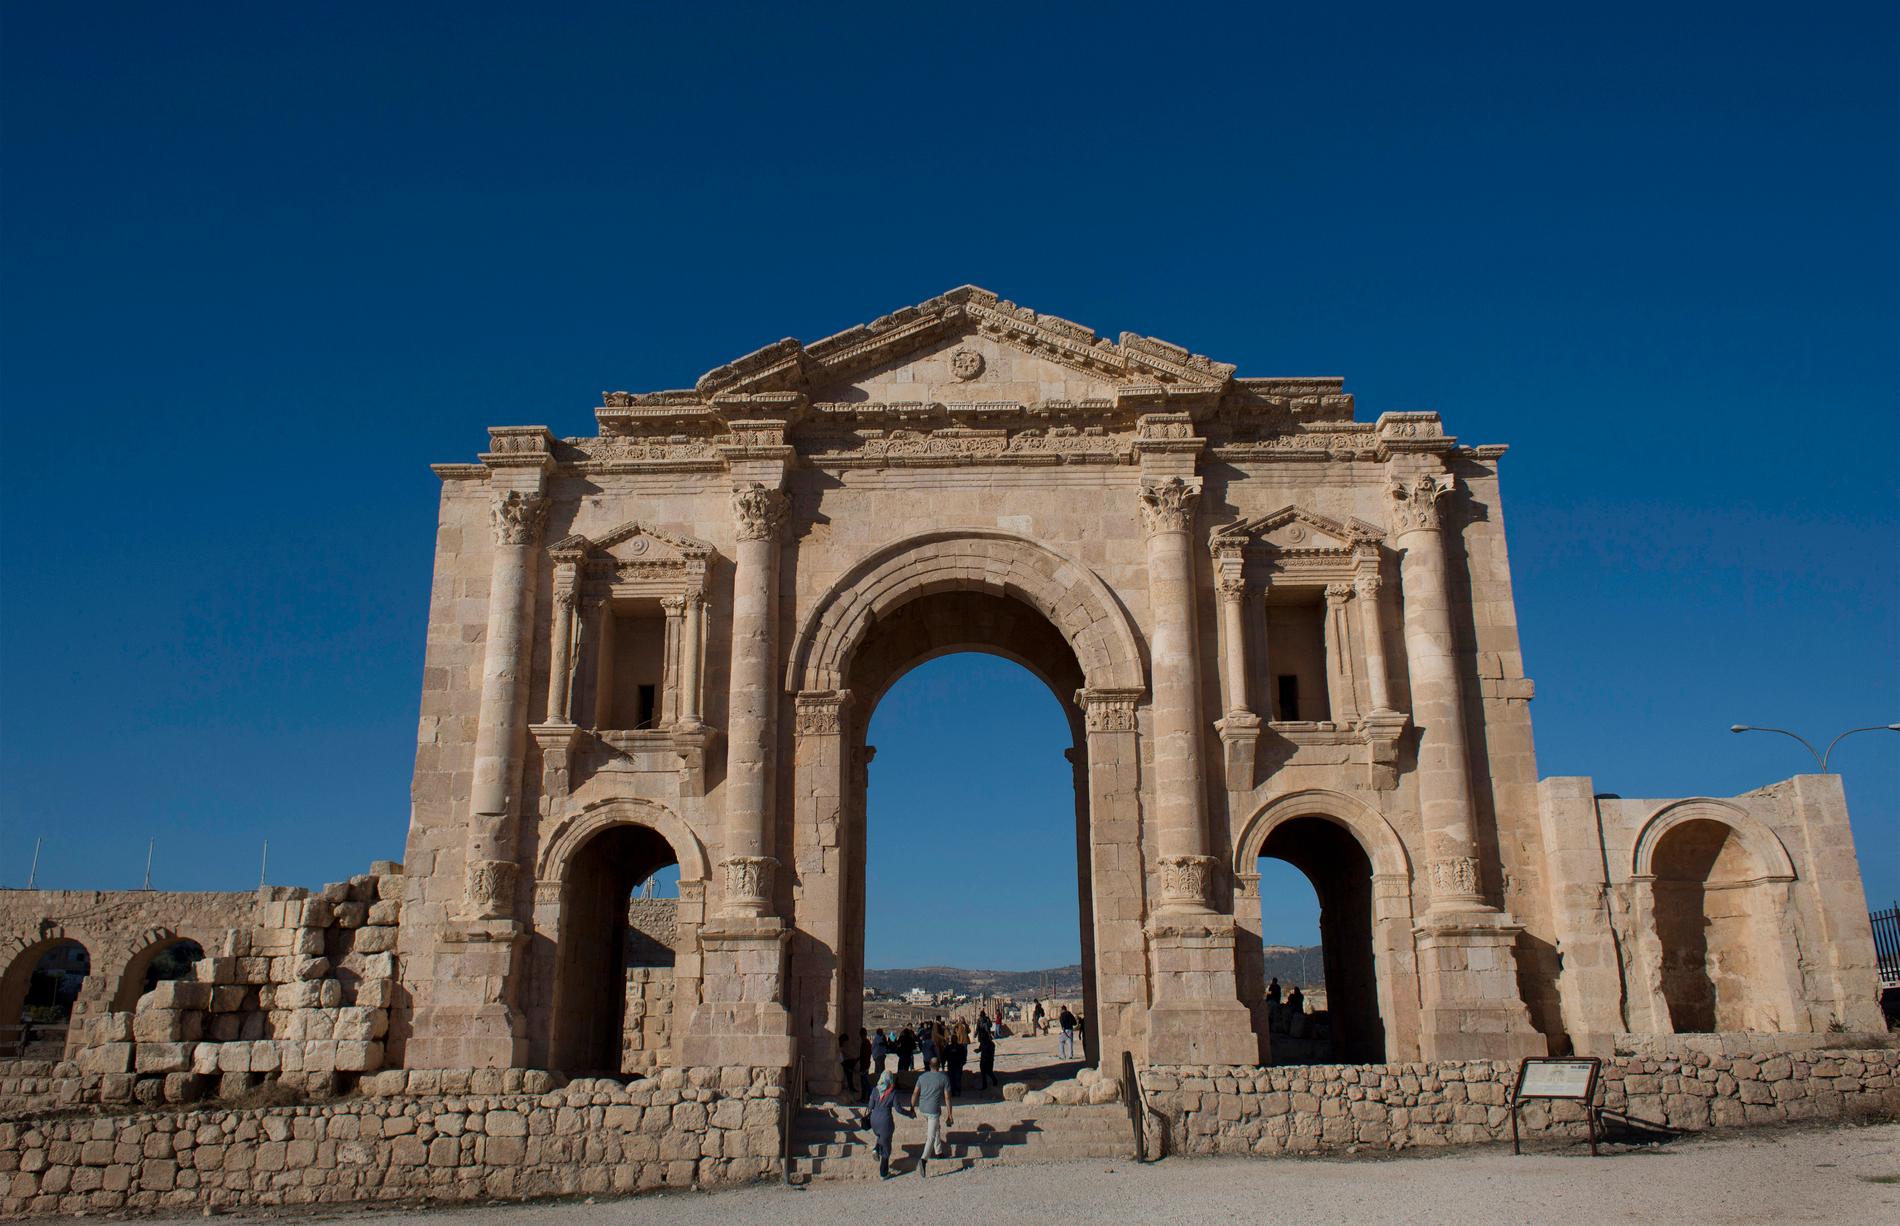 De romerska ruinerna i Jerash i Jordanien är ett populärt turistmål. Arkivbild.